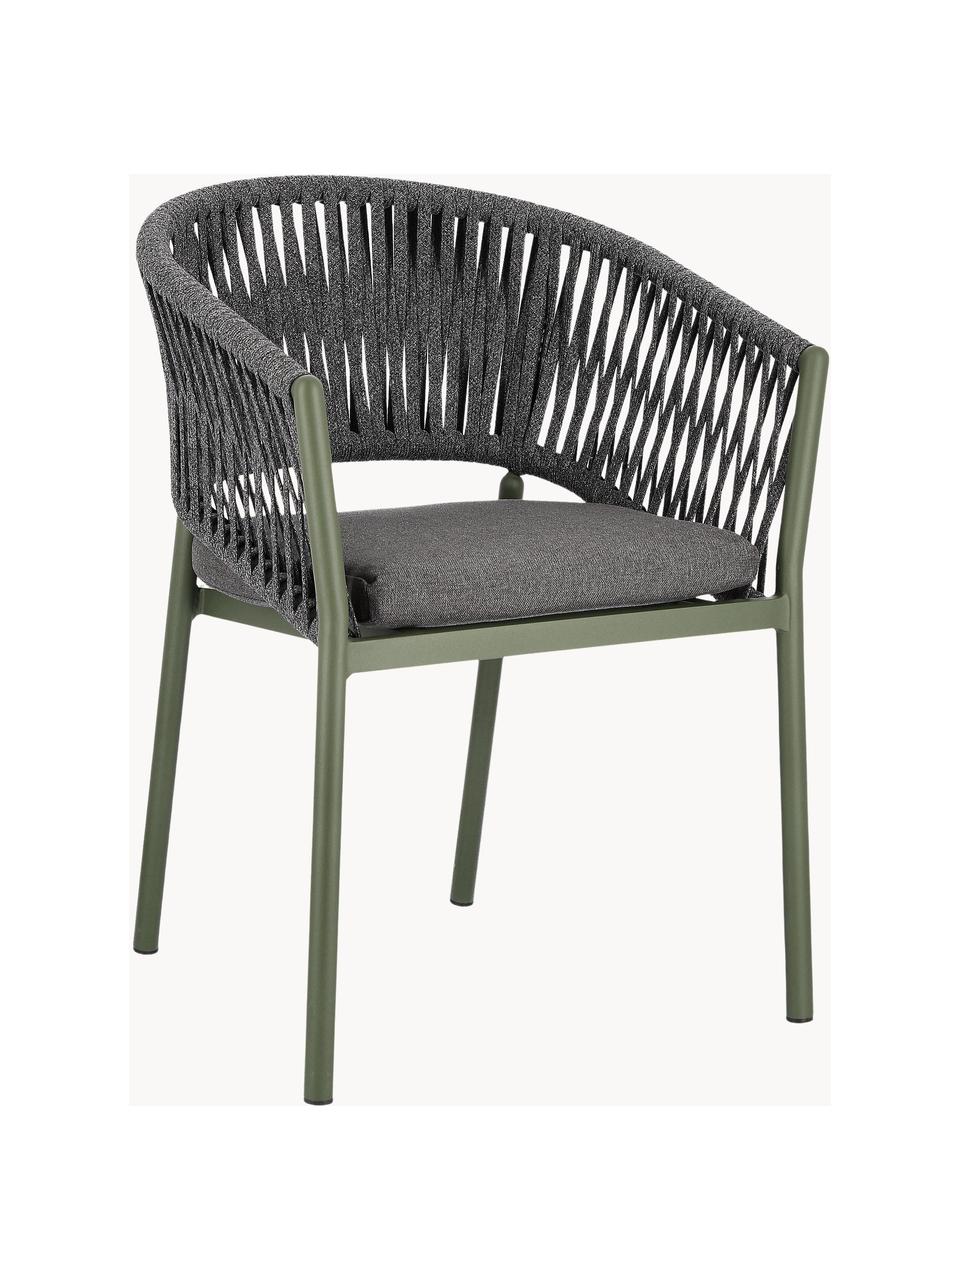 Krzesło ogrodowe Florencia, Stelaż: aluminium malowane proszk, Ciemnoszara tkanina, oliwkowy zielony, S 60 x W 80 cm